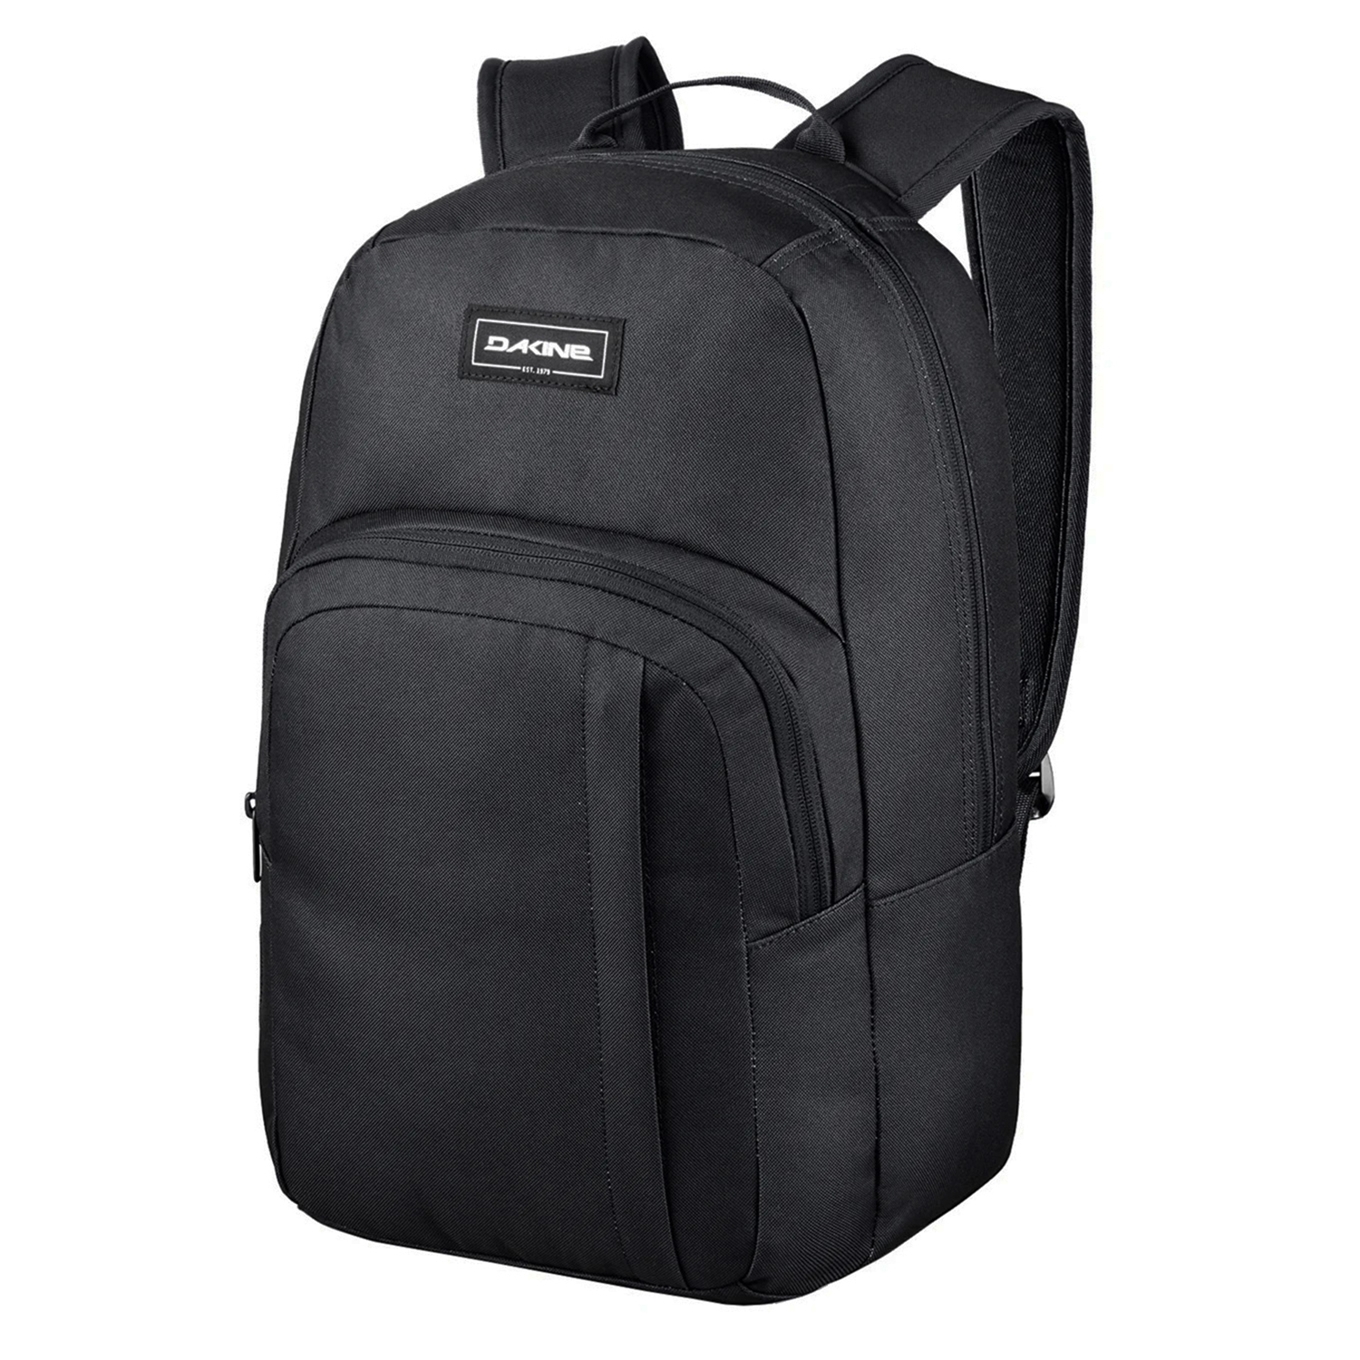 Dakine Class Backpack 25L black backpack